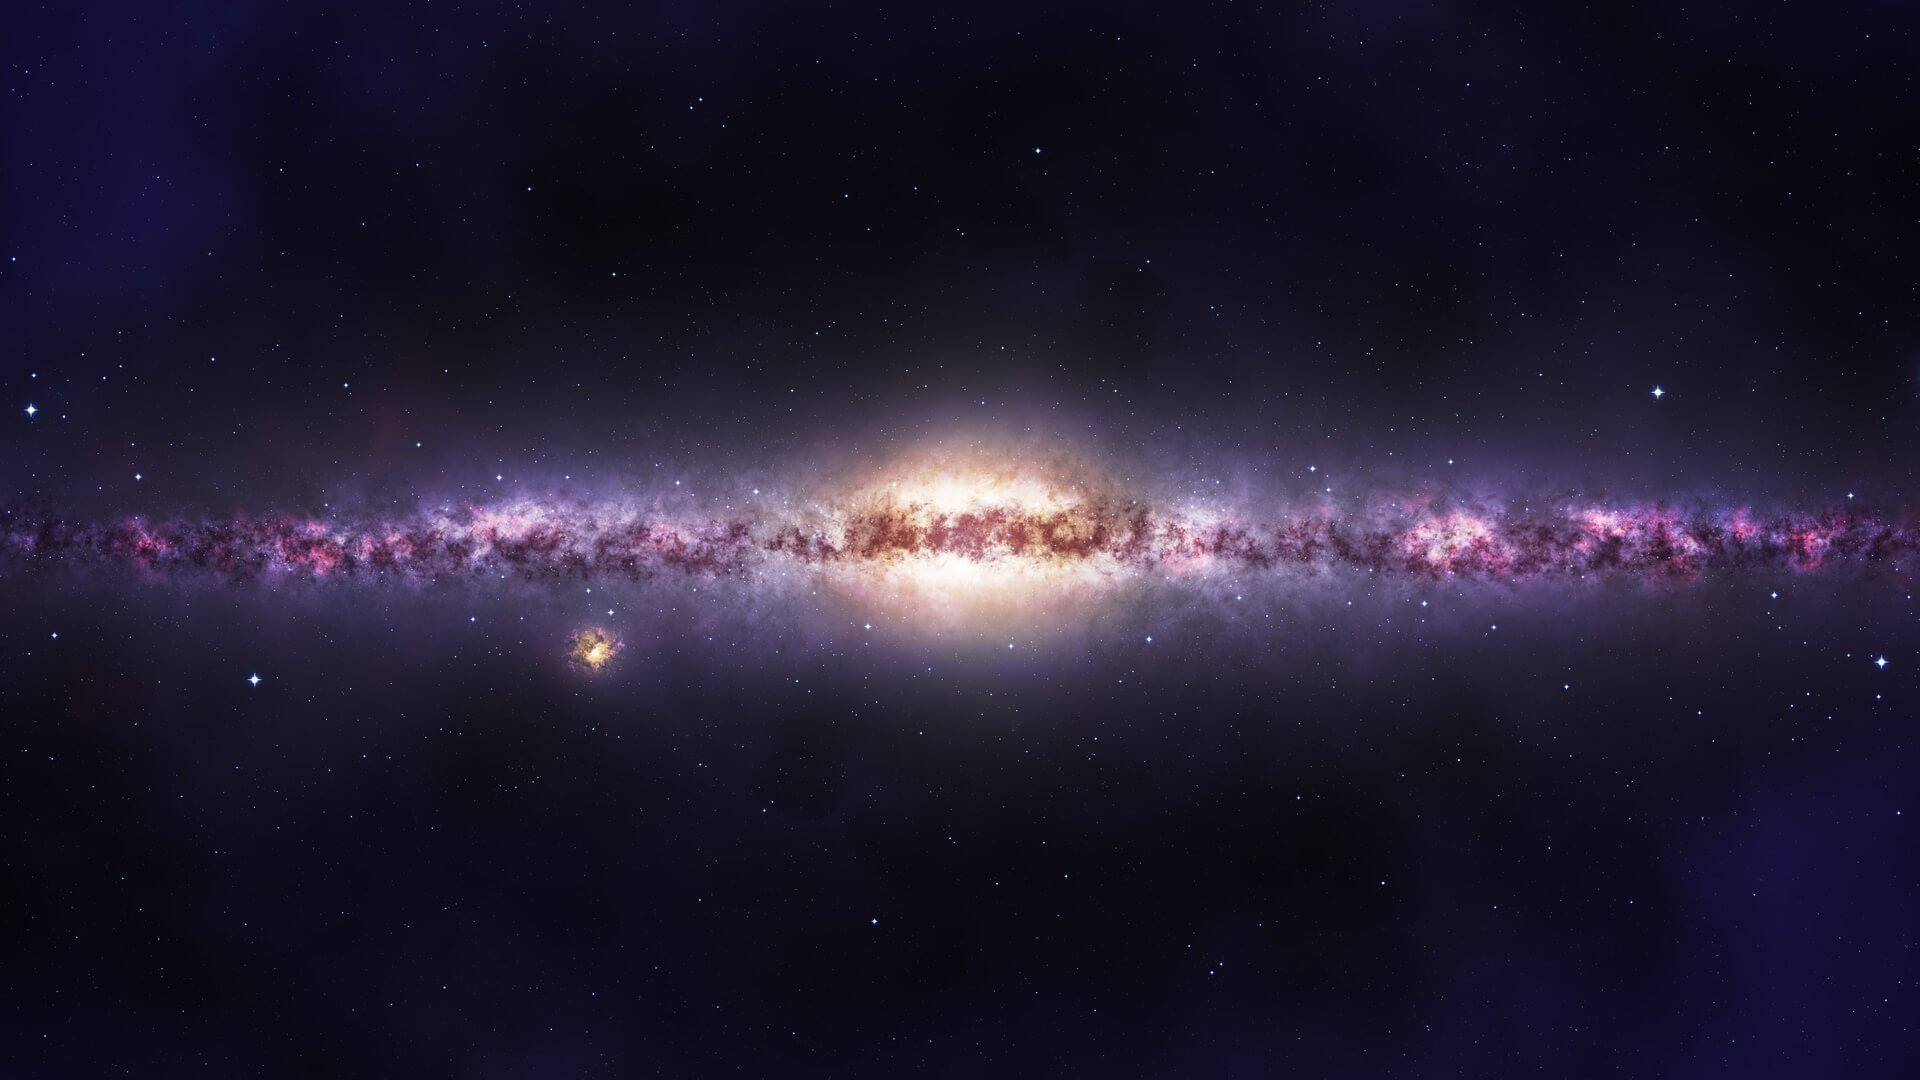 Na galáxia, a via Láctea, o Caminho de muito gás